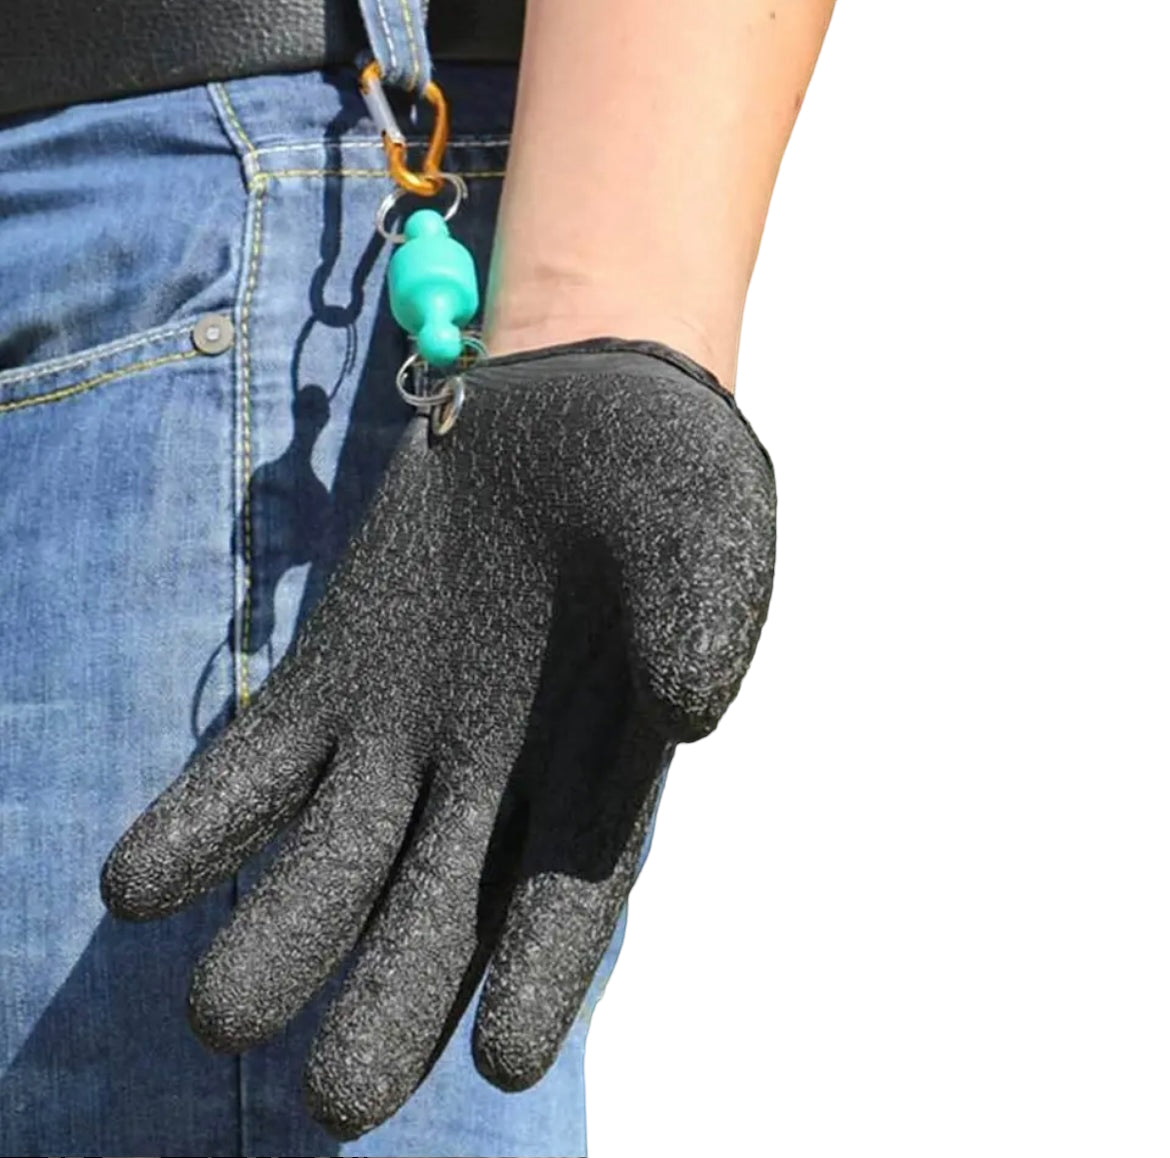 Fishing Glove